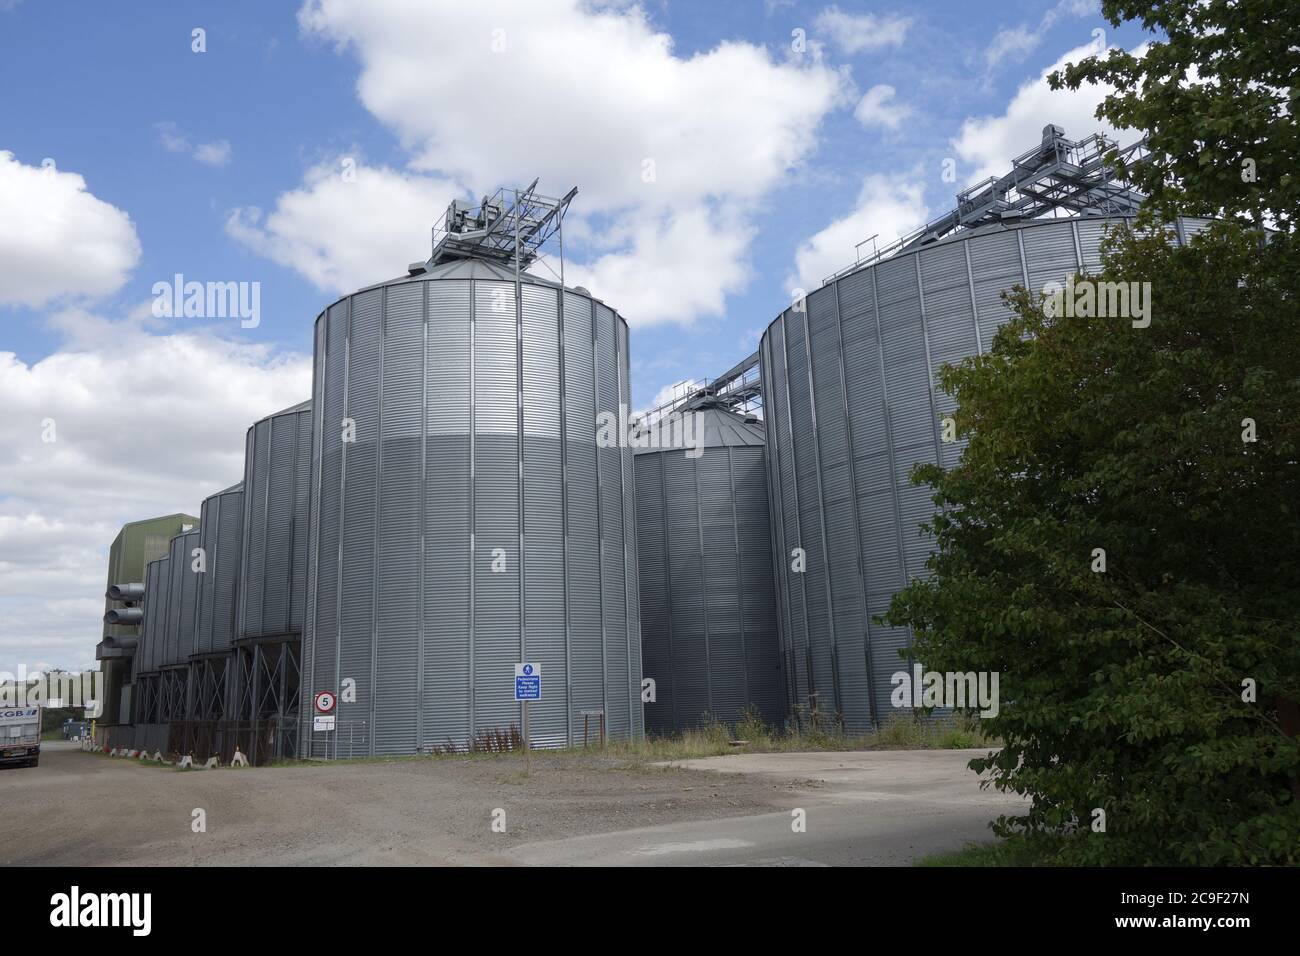 Les centres de traitement avancé de Linton, le camgrain, l'installation de stockage de grain pour les agriculteurs locaux, linton, cambridgeshire, cambs, angleterre, royaume-uni Banque D'Images